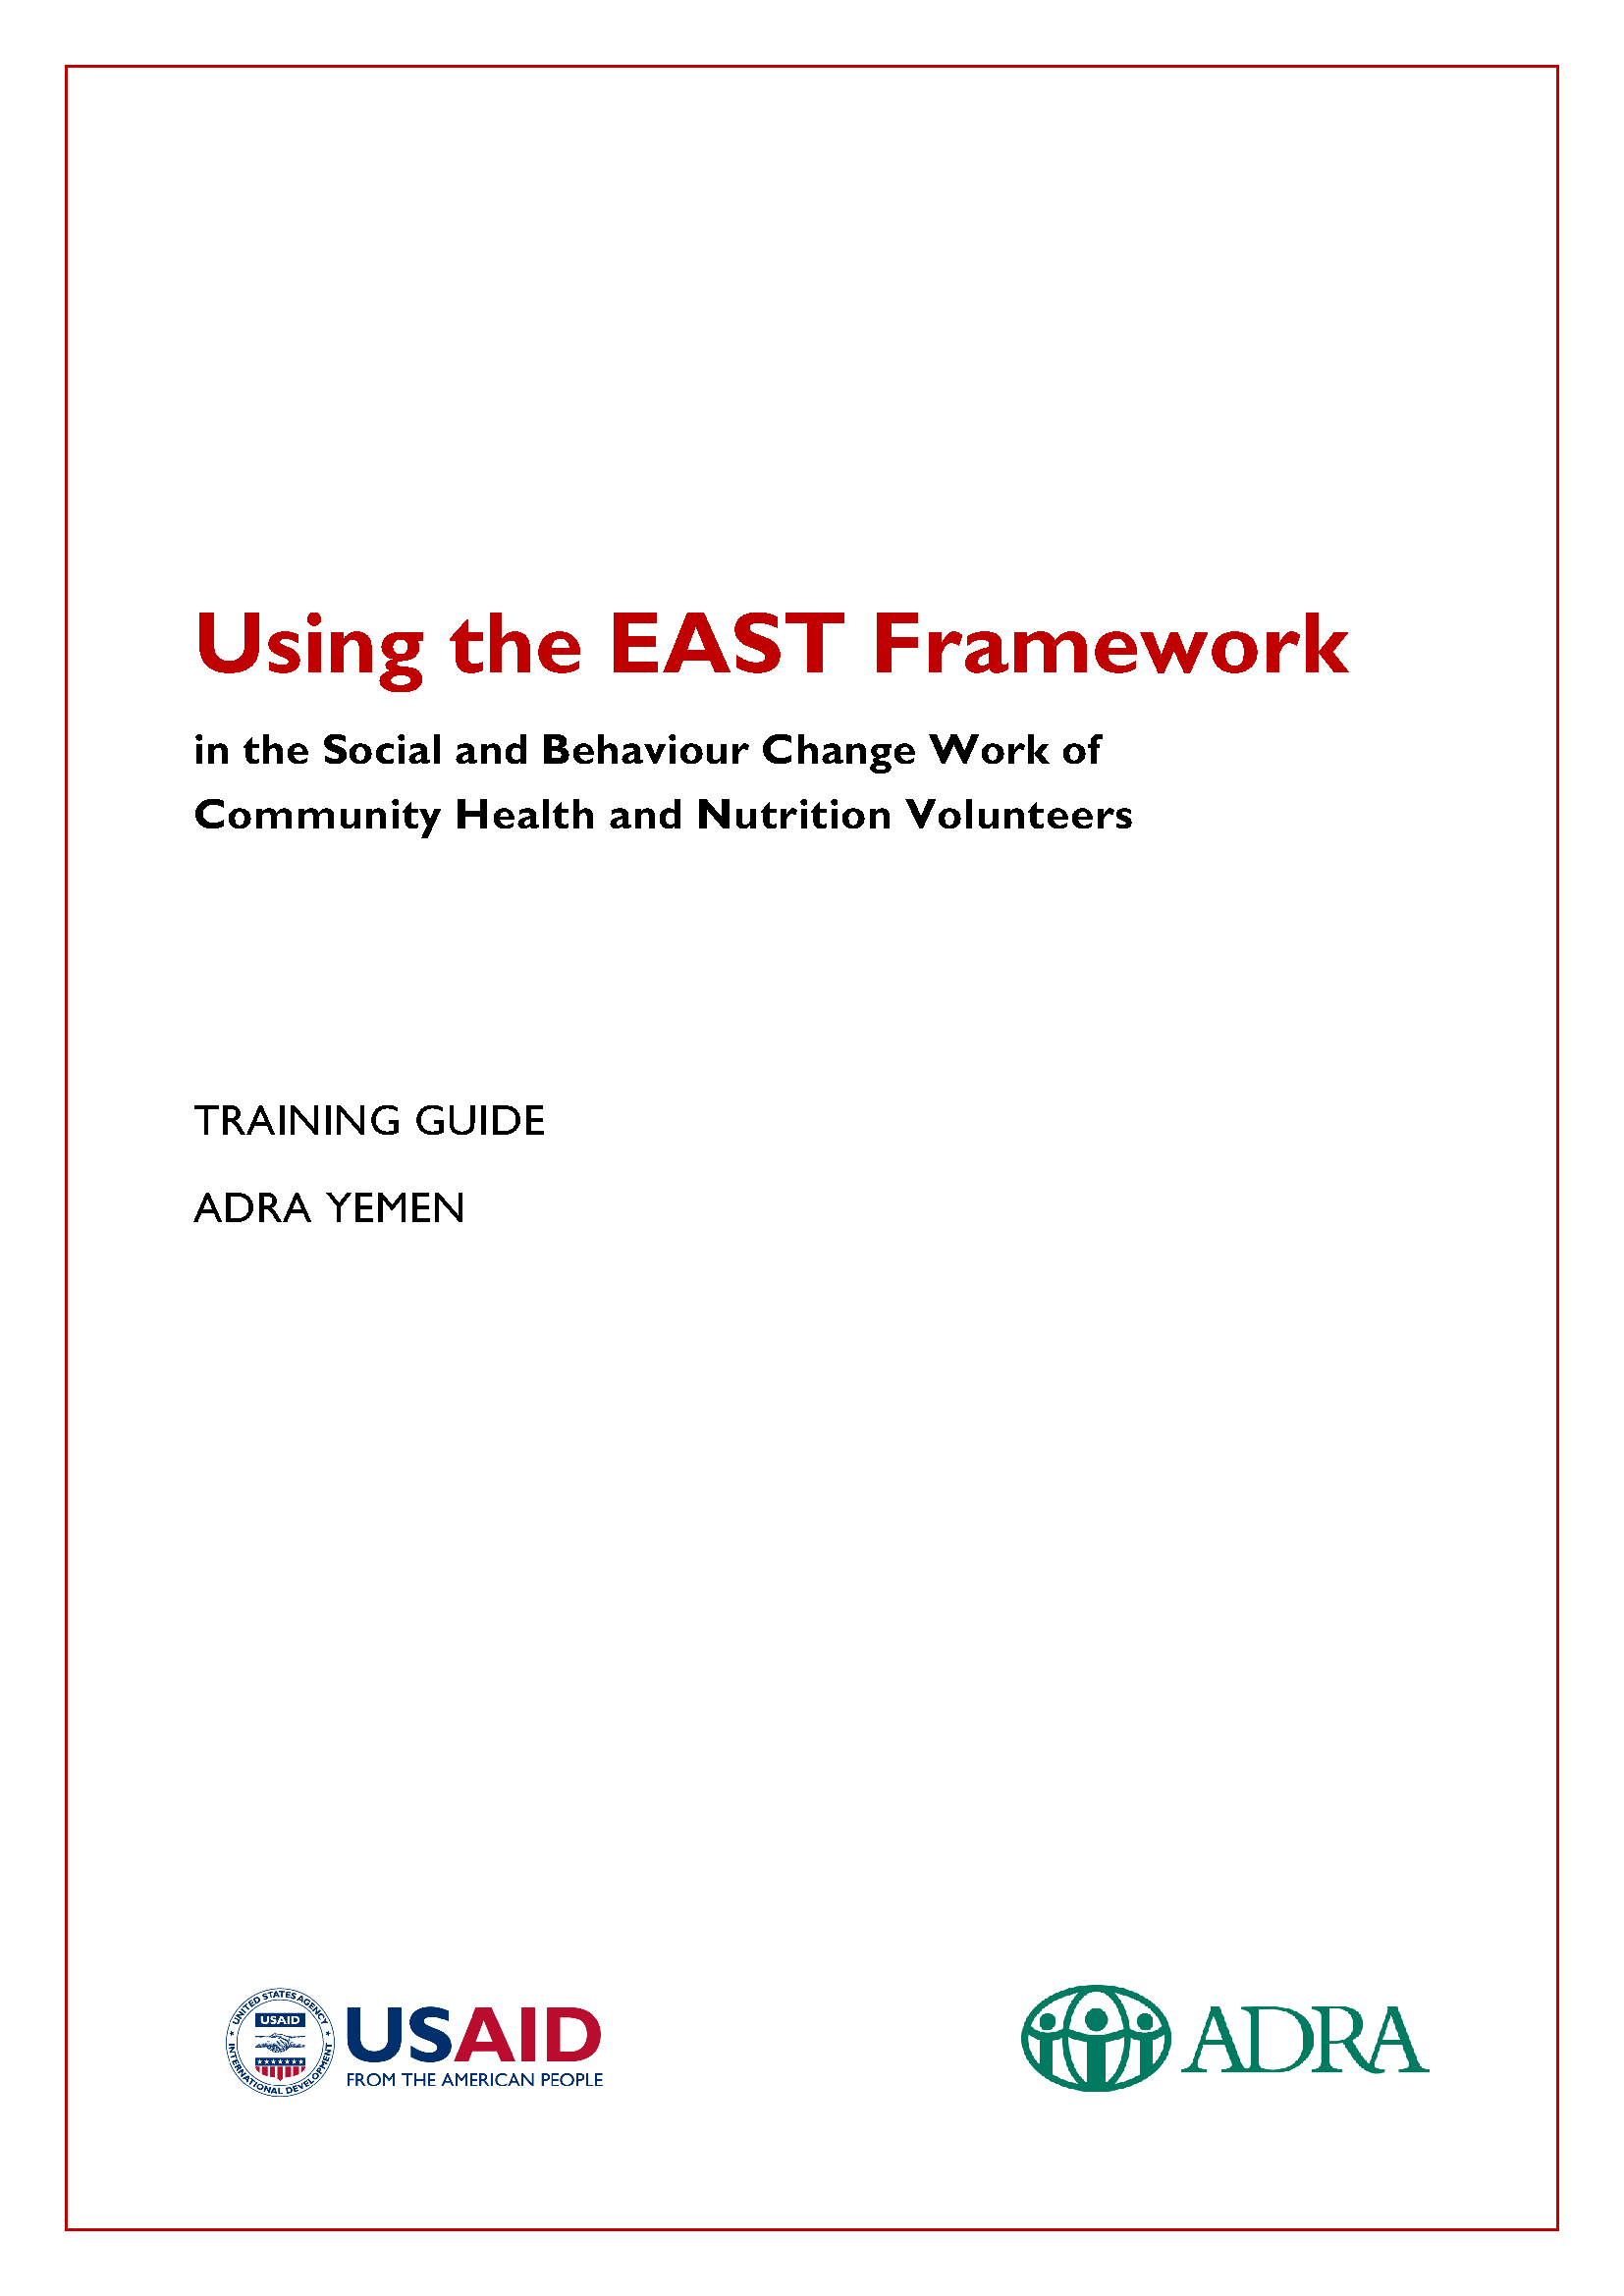 Page de couverture pour l'utilisation du framework EAST